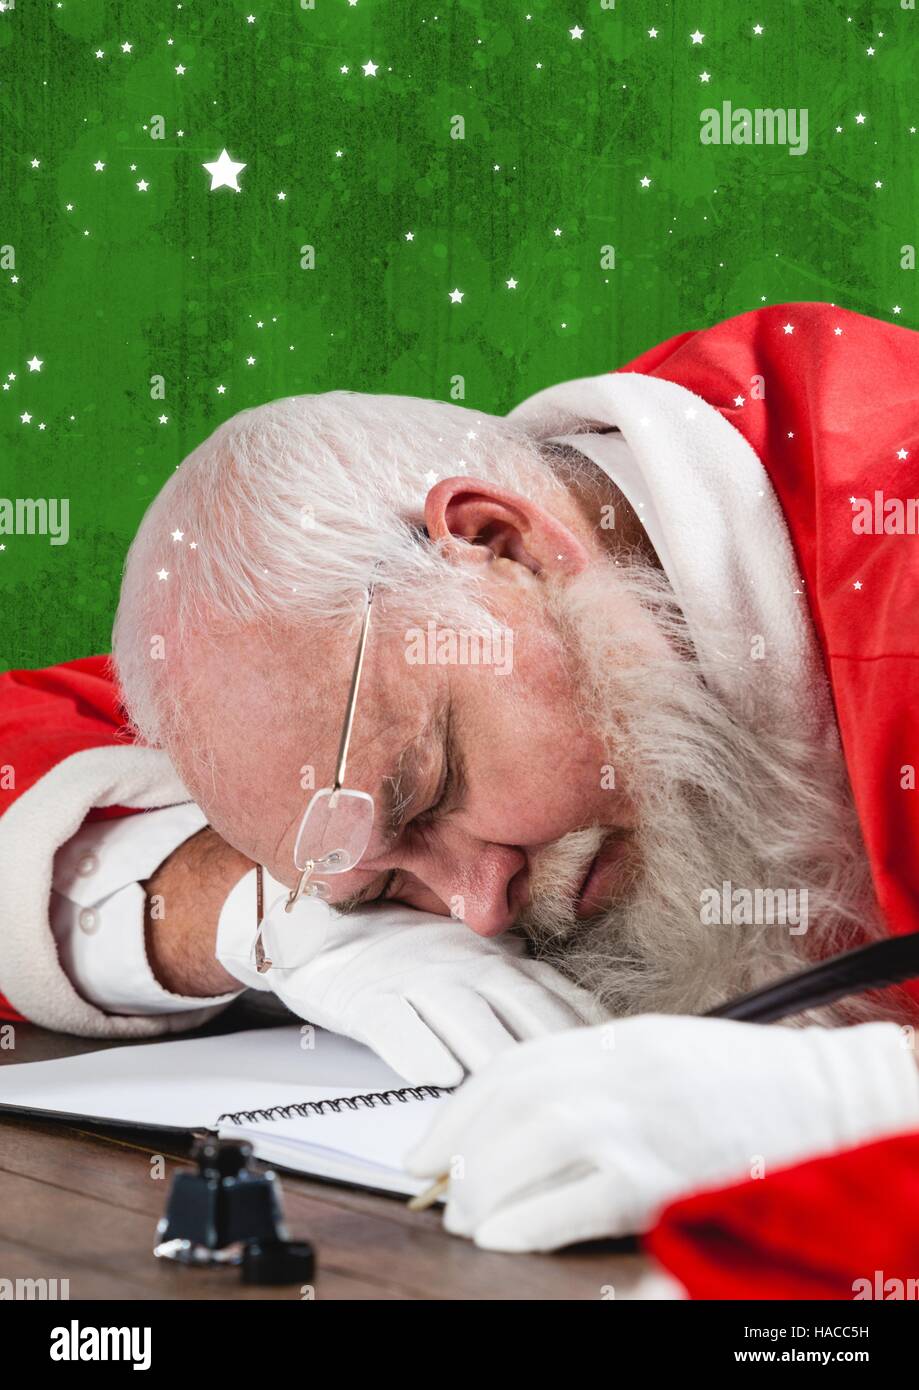 Tired santa claus sleeping at table Stock Photo